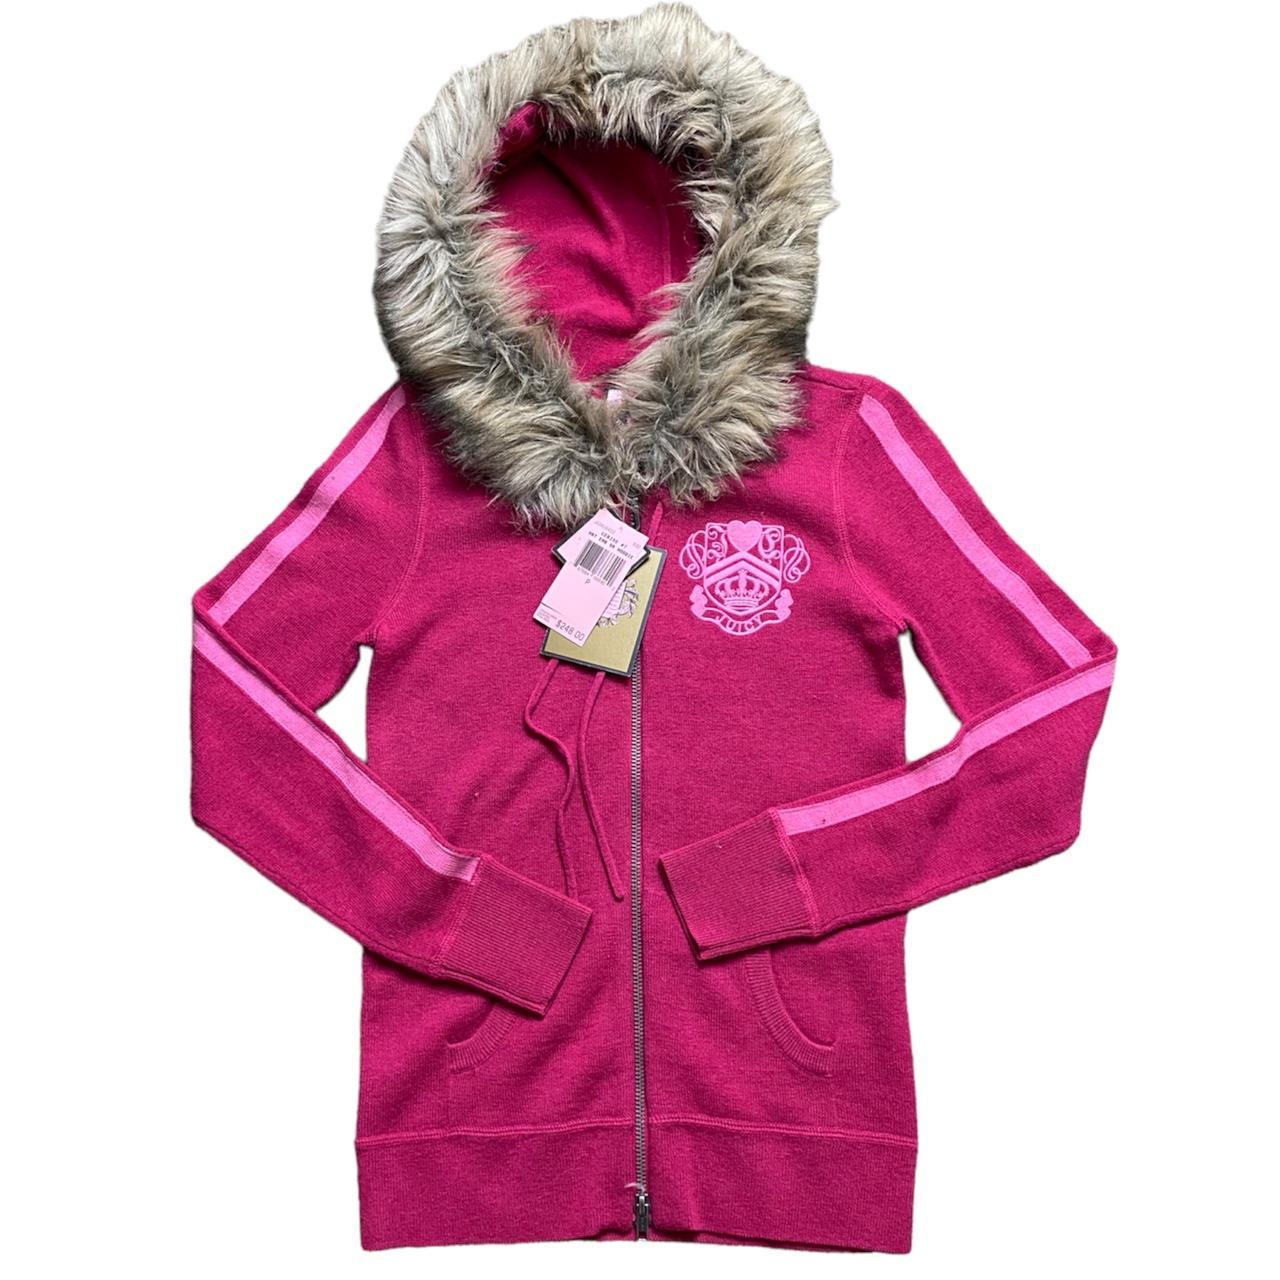 Y2k pink fur hood juicy couture zip up i know ur... - Depop